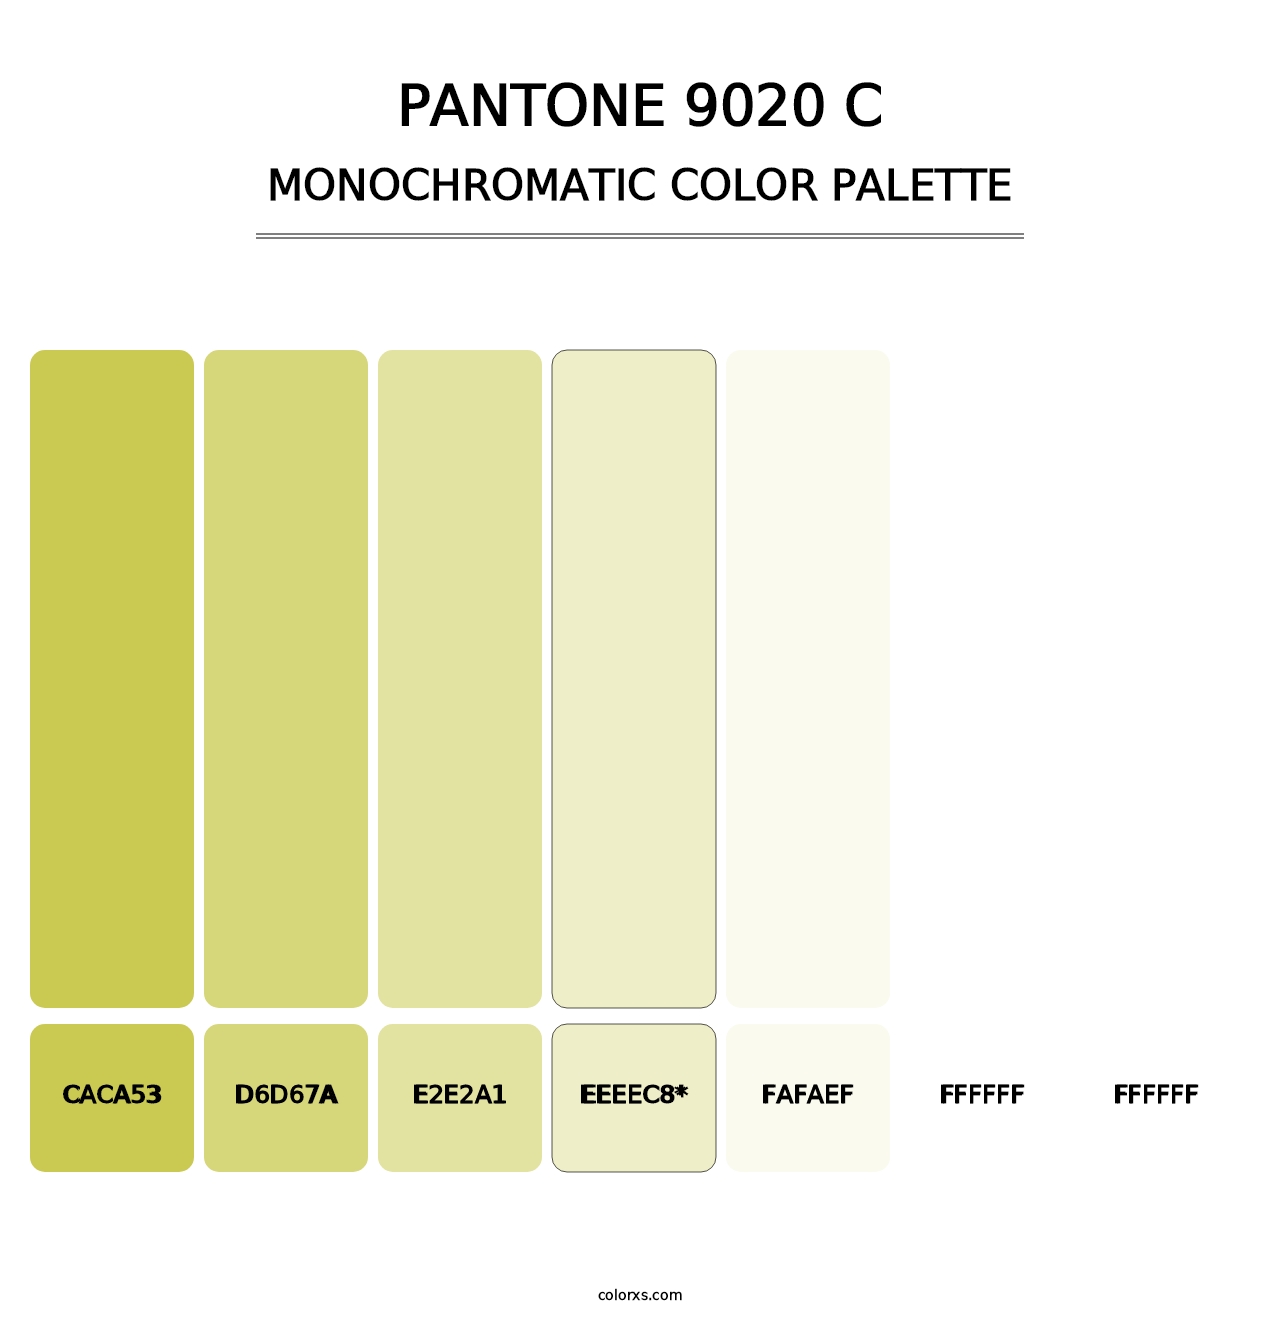 PANTONE 9020 C - Monochromatic Color Palette